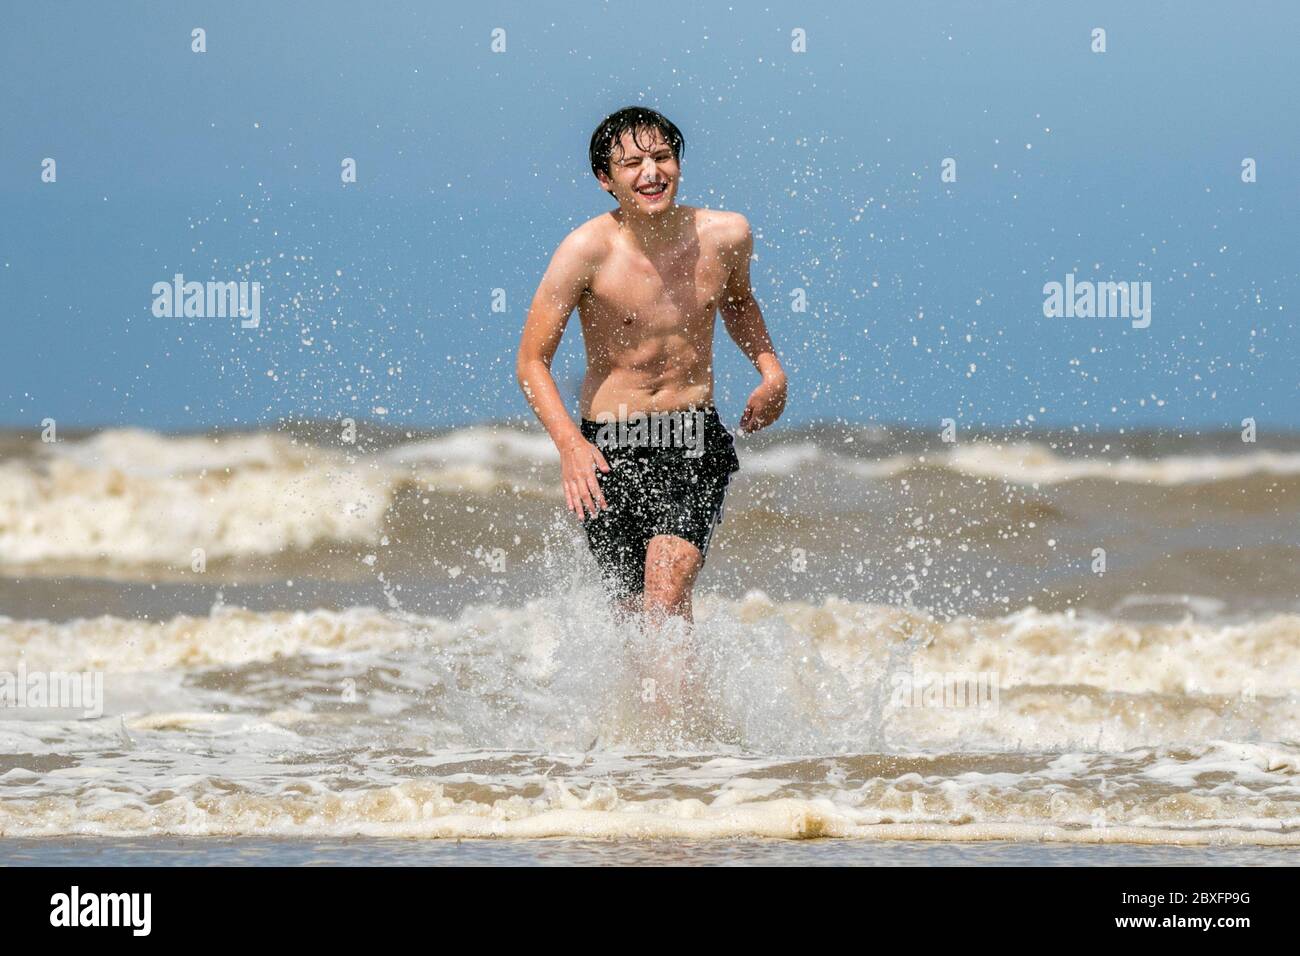 Southport, Merseyside, 7. Juni 2020. Ein schöner Tag am Strand, als Elliot Swinden und seine Freunde, alle qualifizierten Rettungsschwimmer, sich austoben, da sie viel Spaß beim Spielen im Meer vor Southport Beach in Merseyside haben. Quelle: Cernan Elias/Alamy Live News Stockfoto